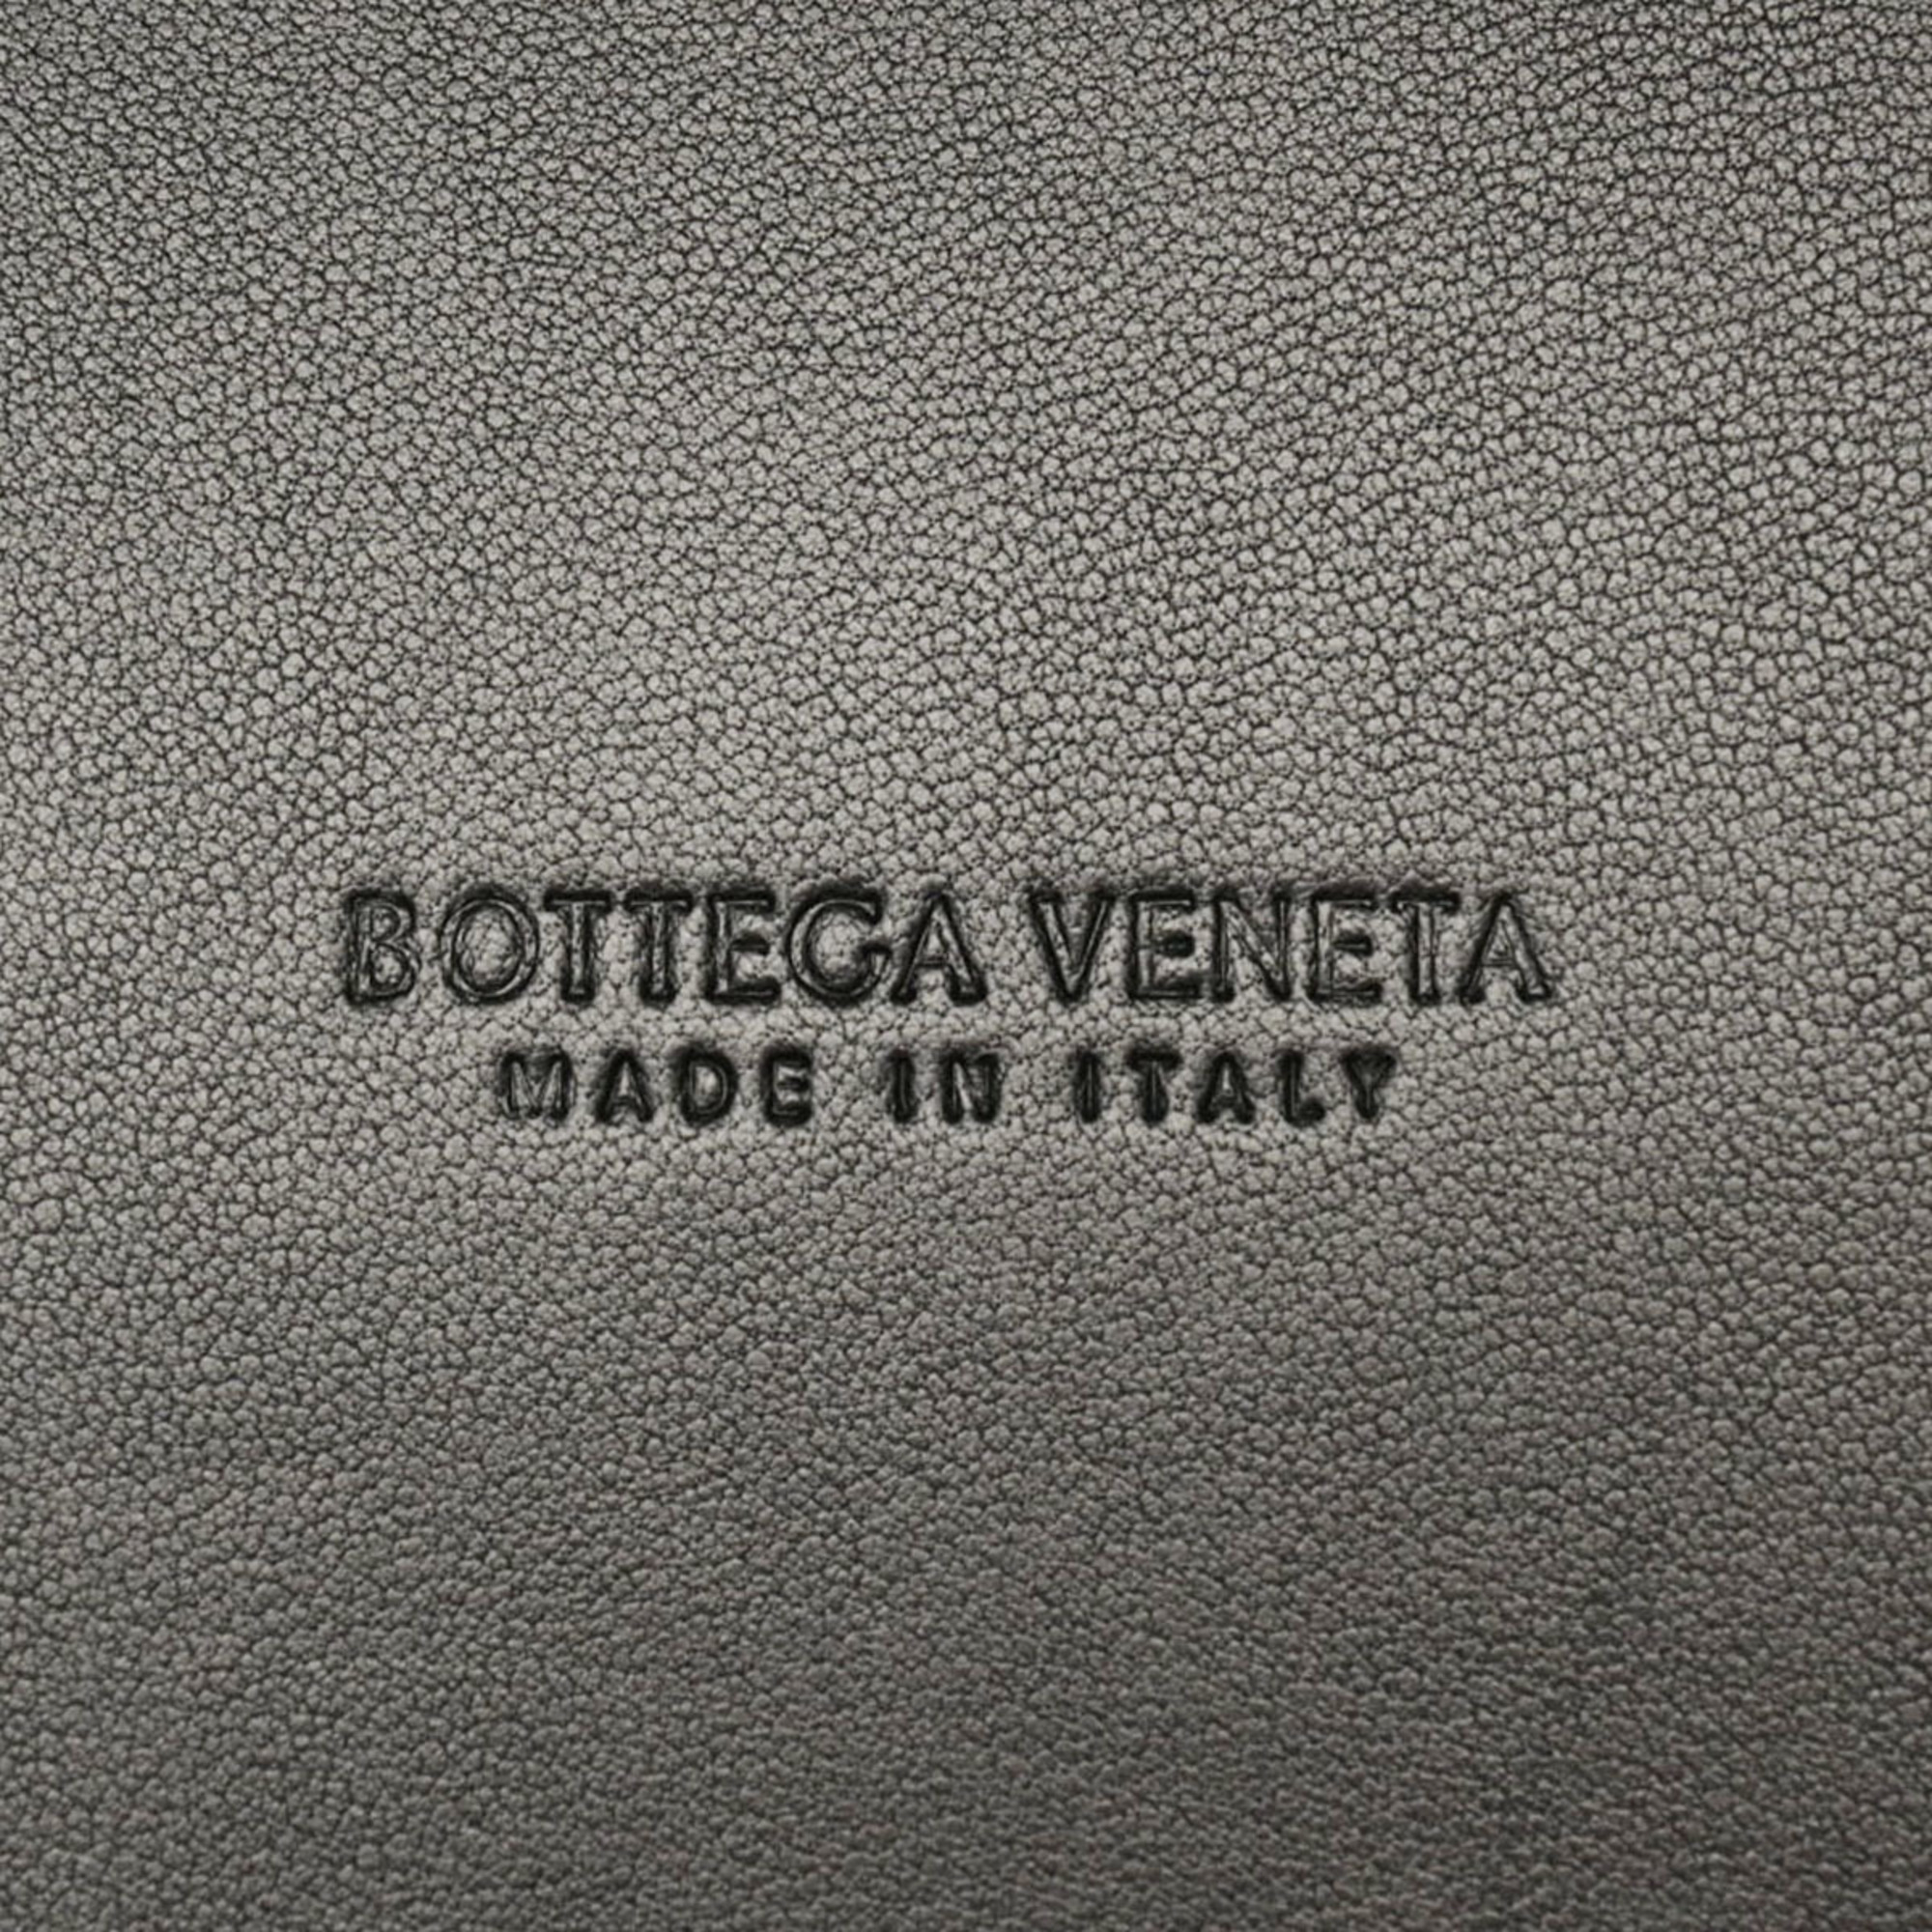 Bottega Veneta 730297 Unisex,Women Intrecciato Handbag,Pouch Black